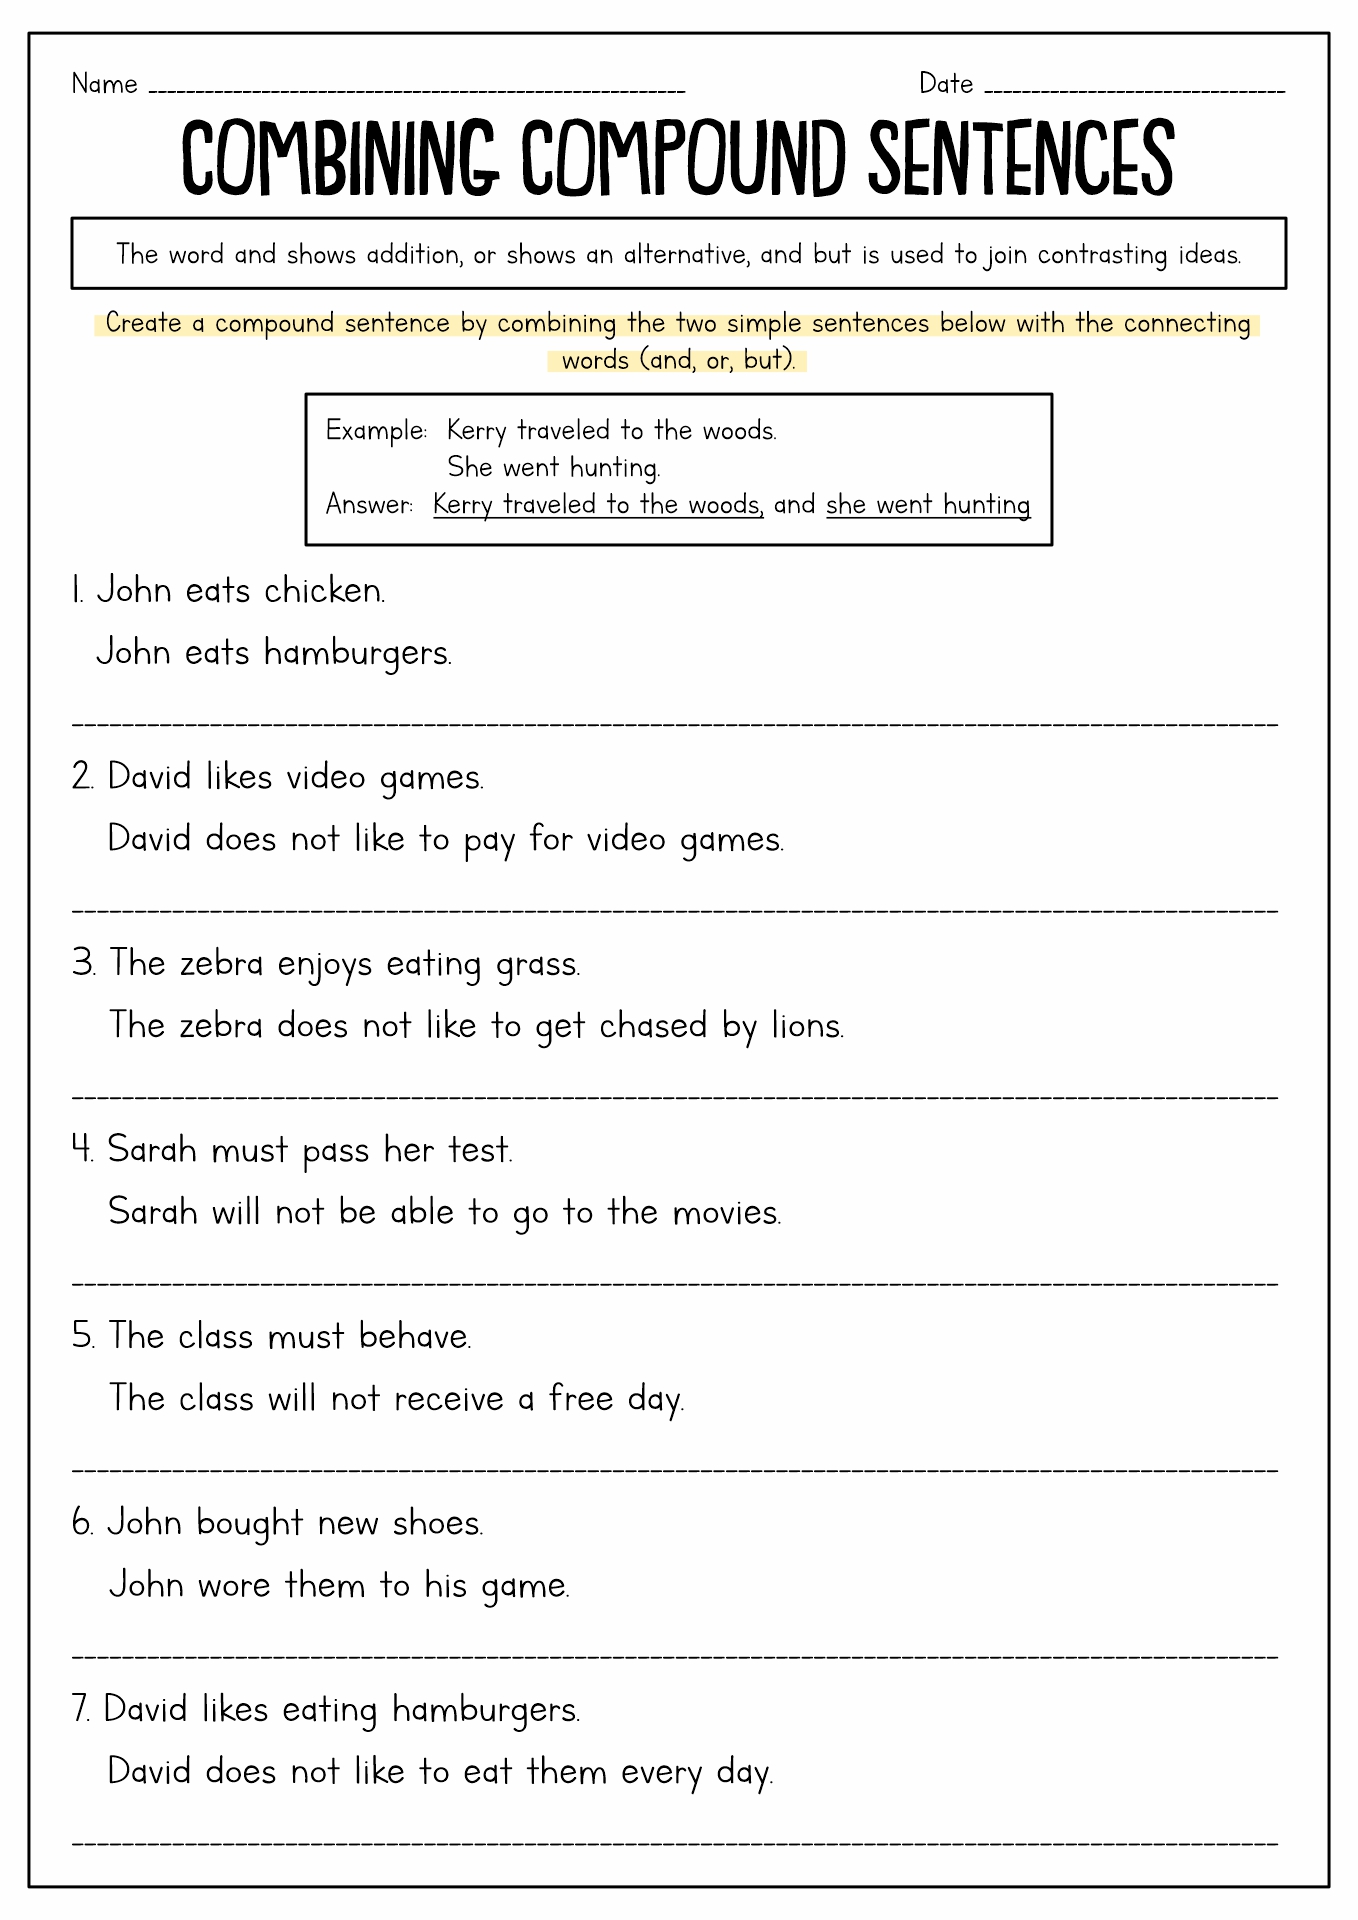 Compound Sentences Worksheets 2nd Grade Image